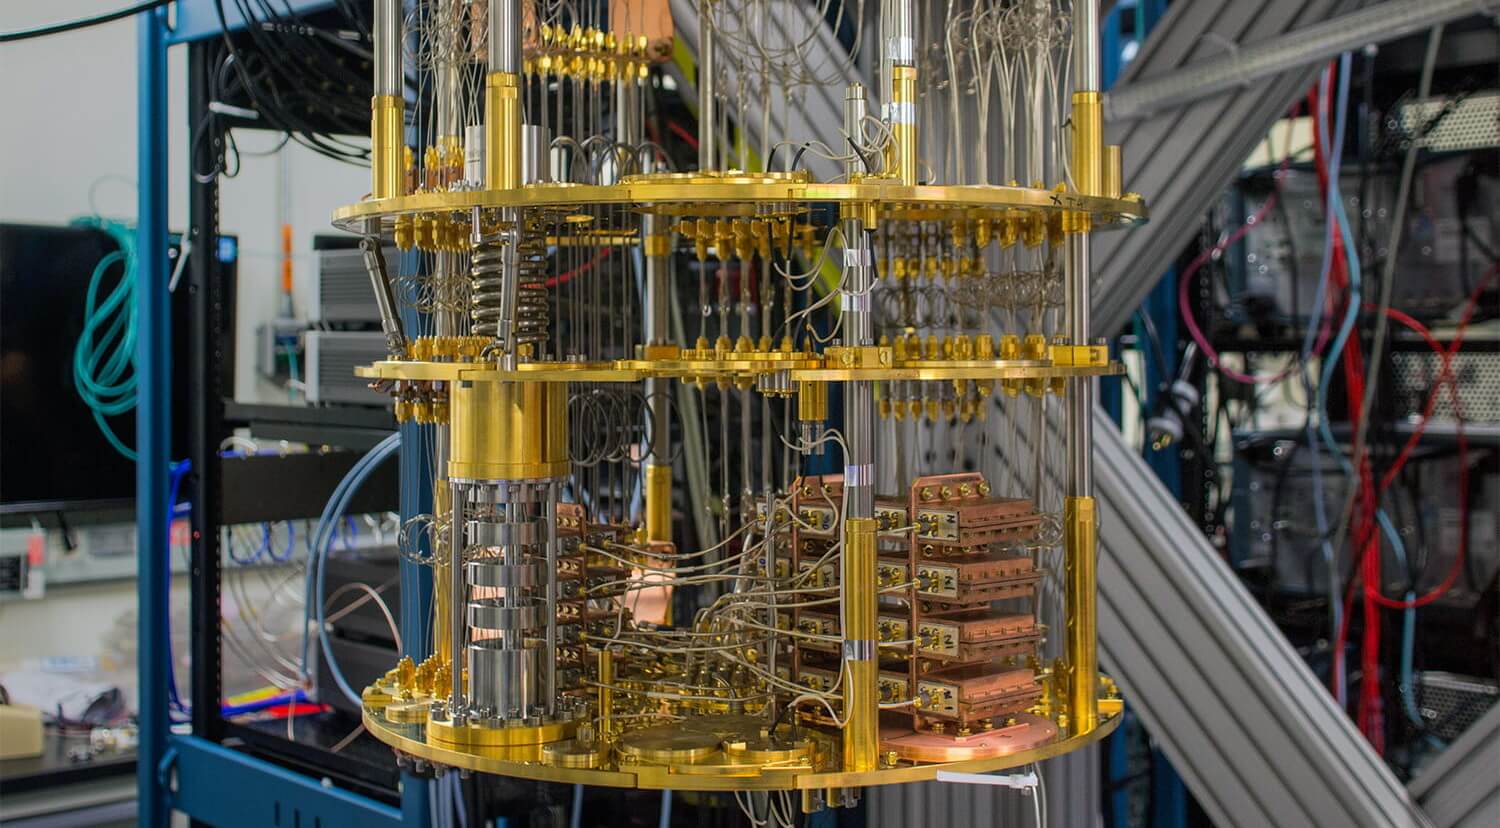 Fotografija kvantnog računala.